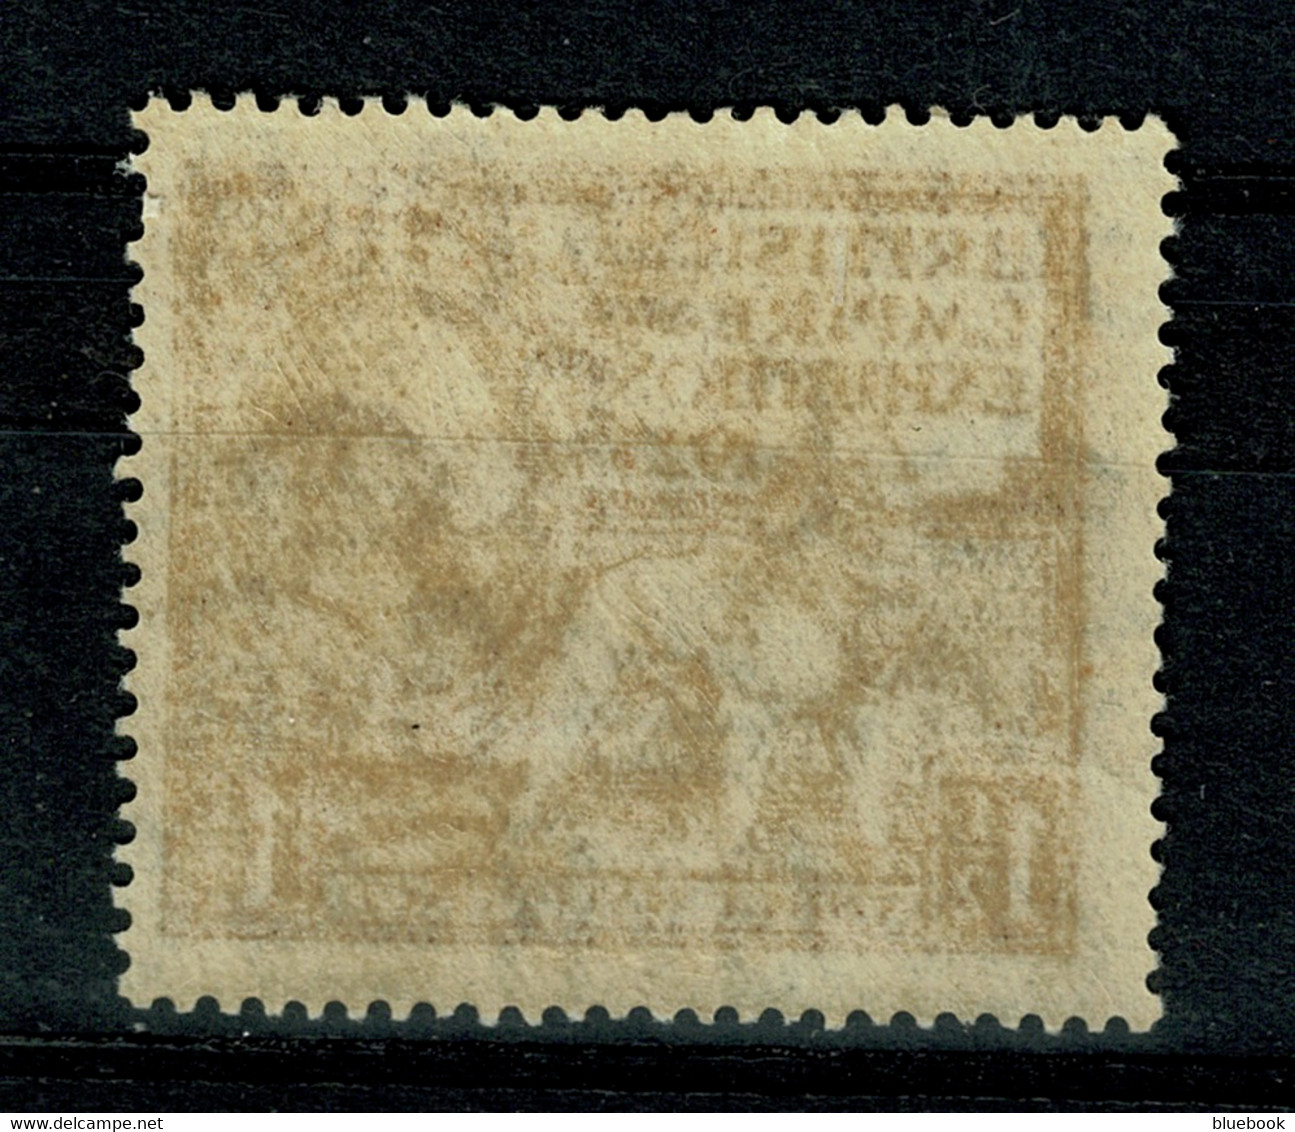 Ref 1595 - GB 1925 - KGV British Empire Exhibition 1 1/2d Mint Stamp - Neufs